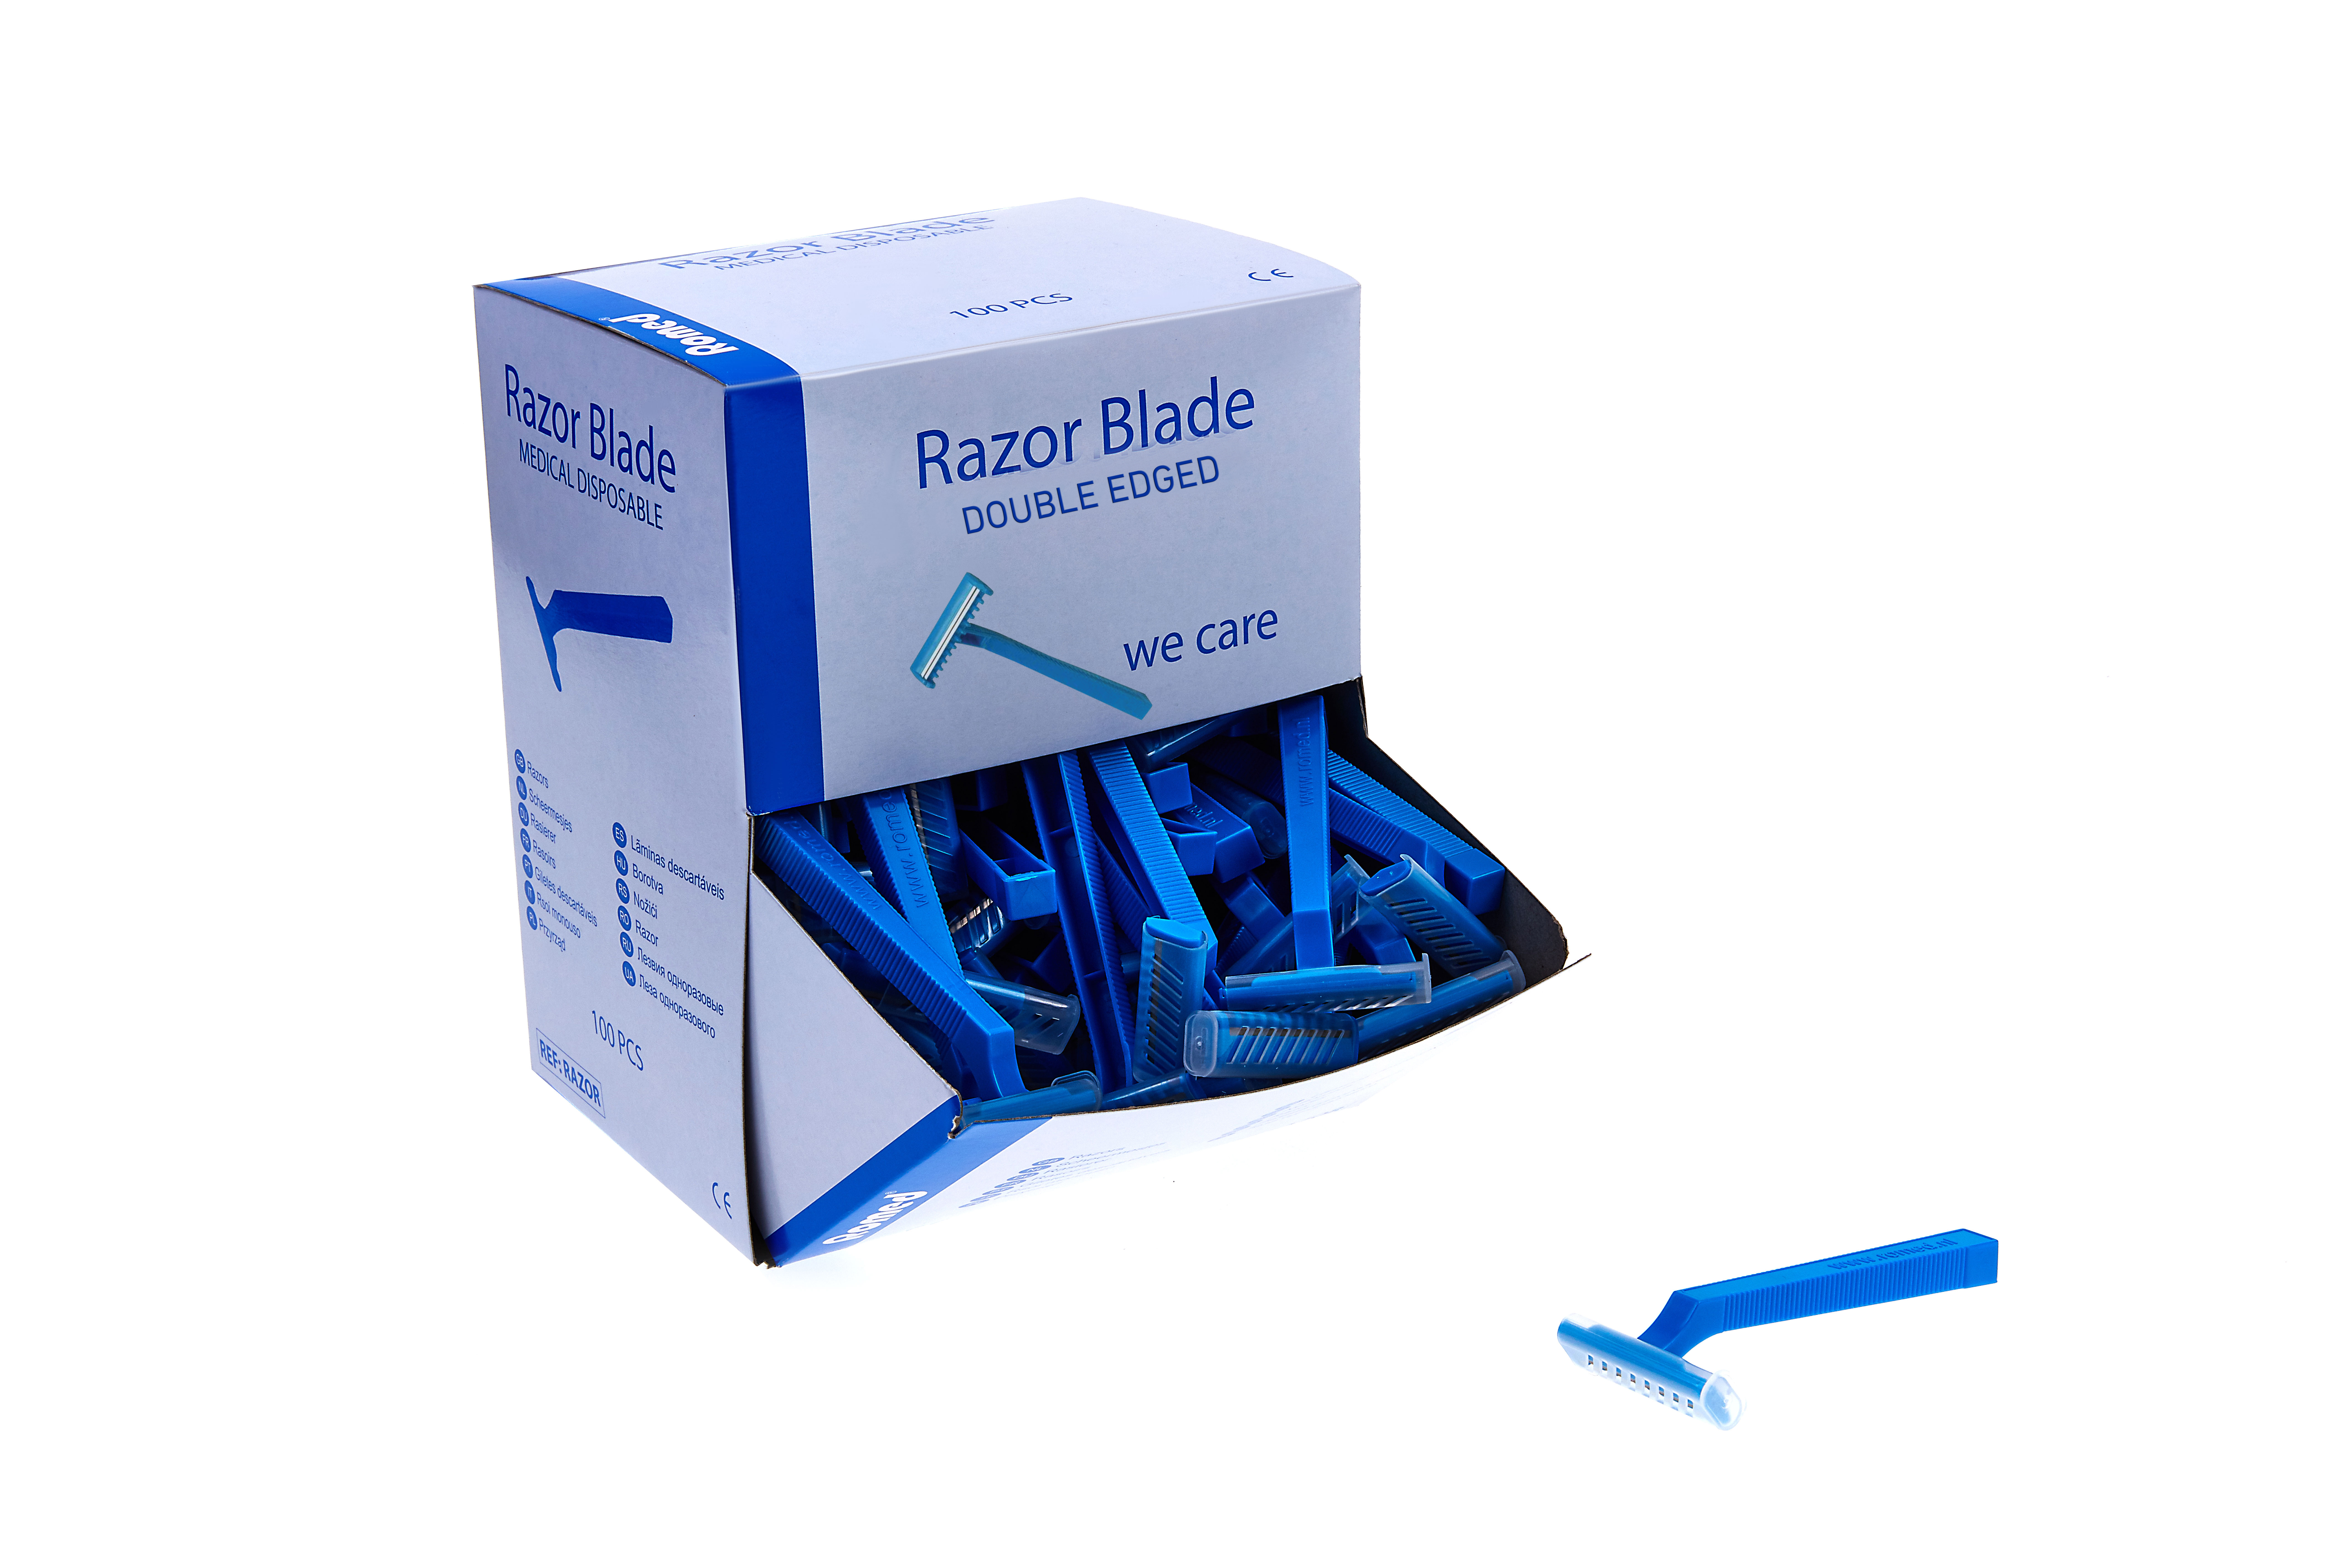 RAZORS-D Romed disposable scheermesjes, roestvast, enkel snijvlak of dubbel snijvlak, niet-steriel, 100 stuks in dispenser doosje, 12x 100 stuks = 1200 stuks in een karton.